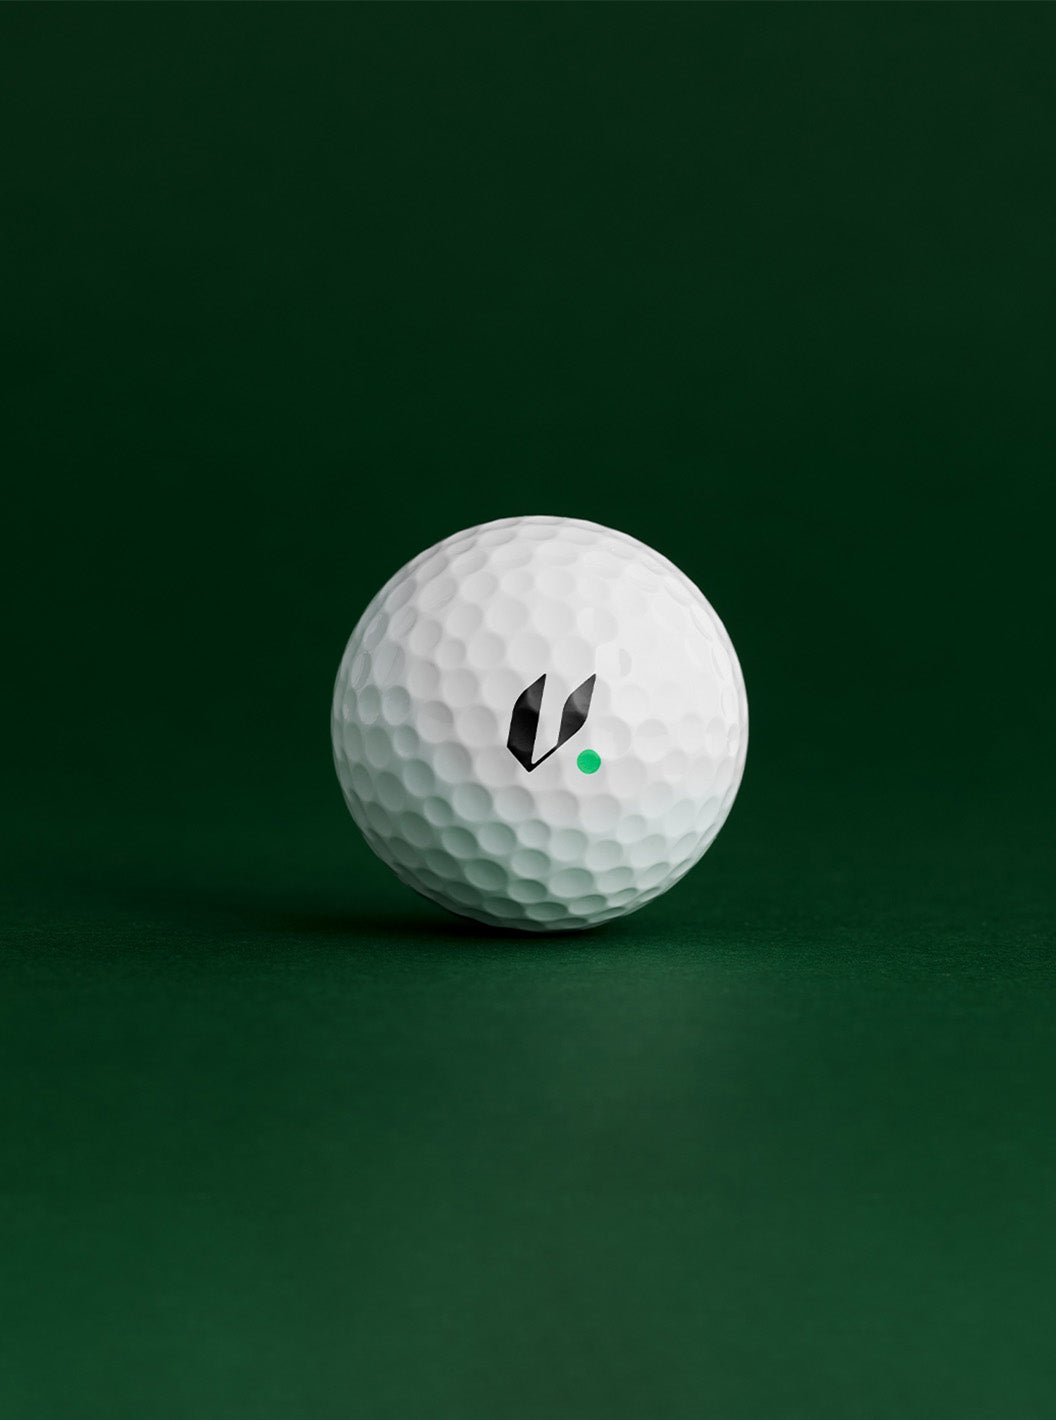 Vollē Golf Balls - Origin (3 Pack)